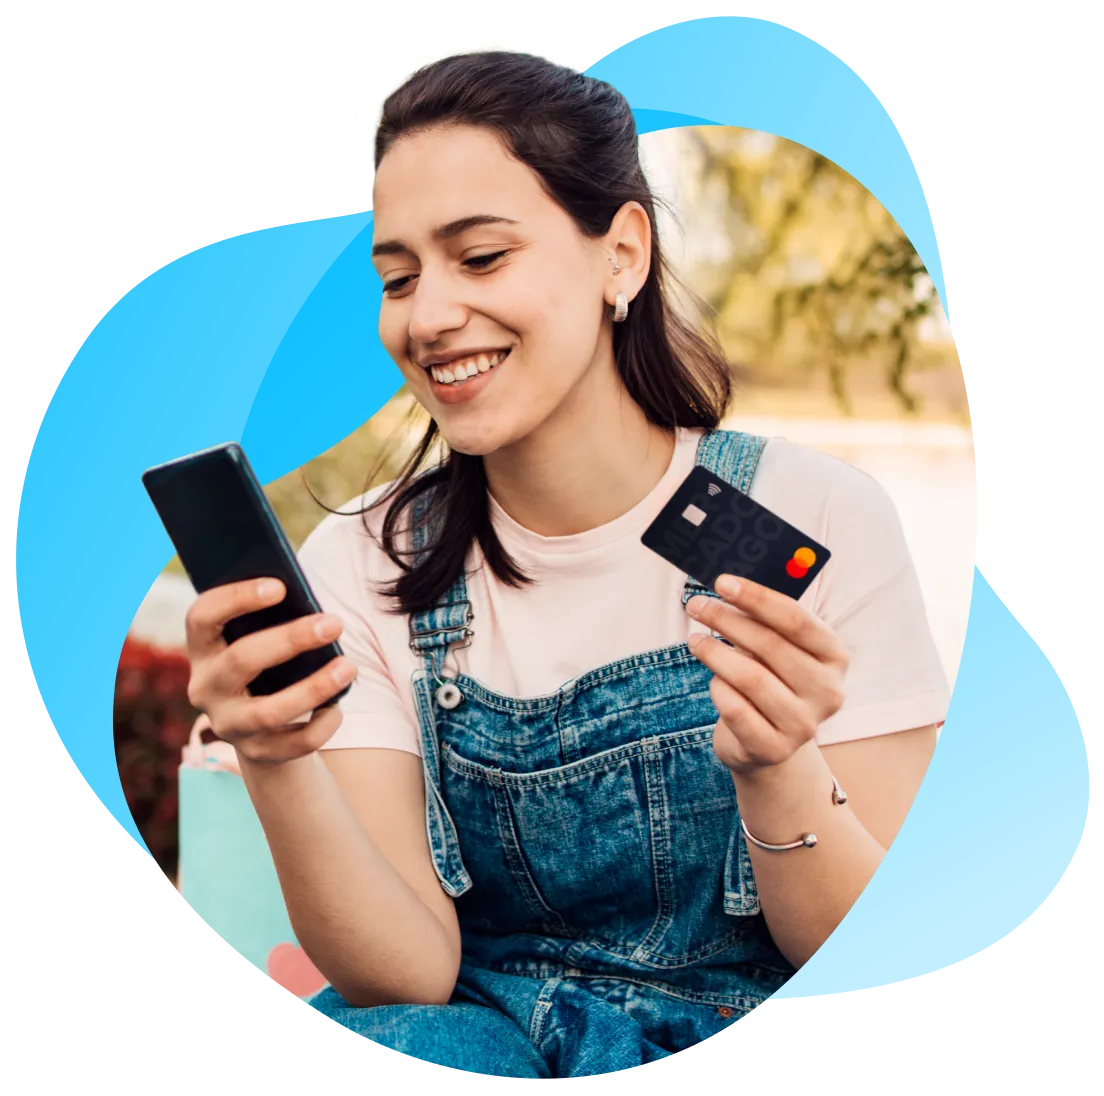 Chica argentina que sostiene un teléfono celular en la mano derecha y una tarjeta de crédito o tarjeta de débito en la mano izquierda.